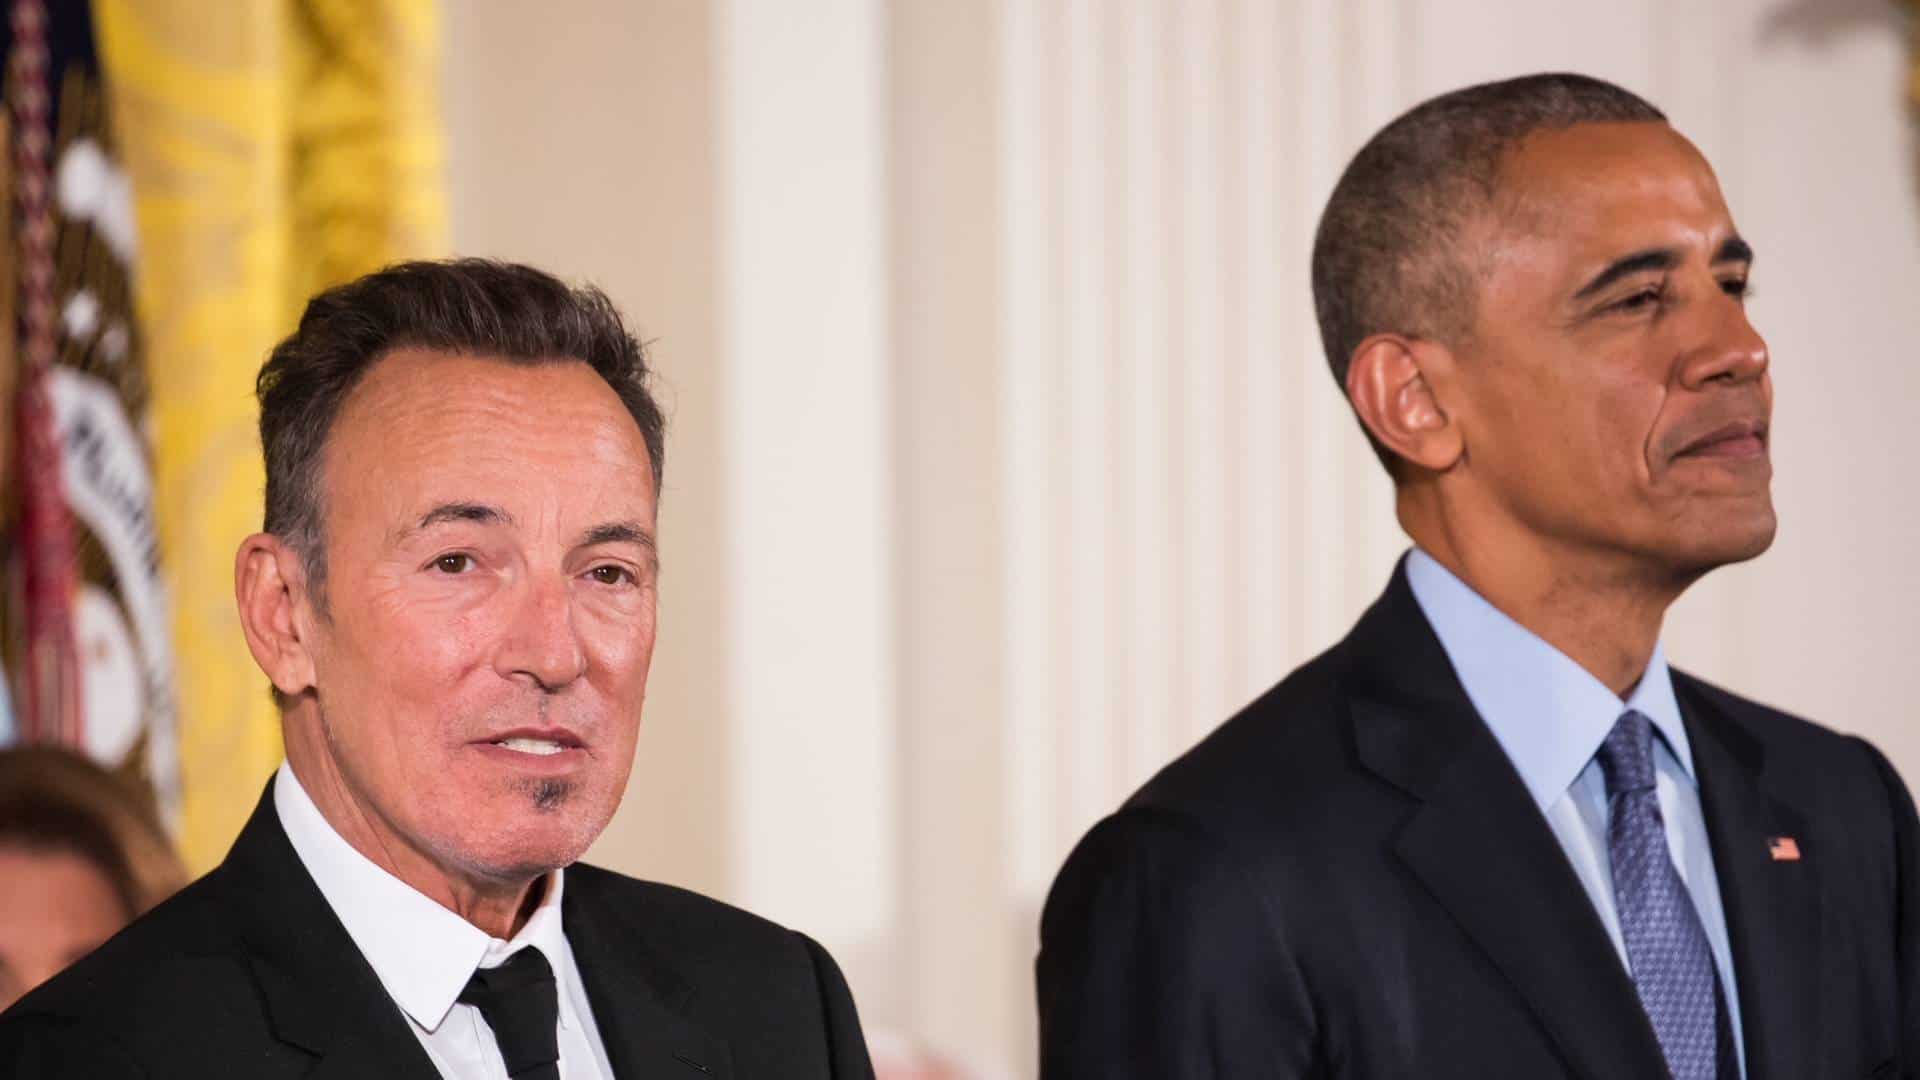 Barack Obama with Bruce Springsteen